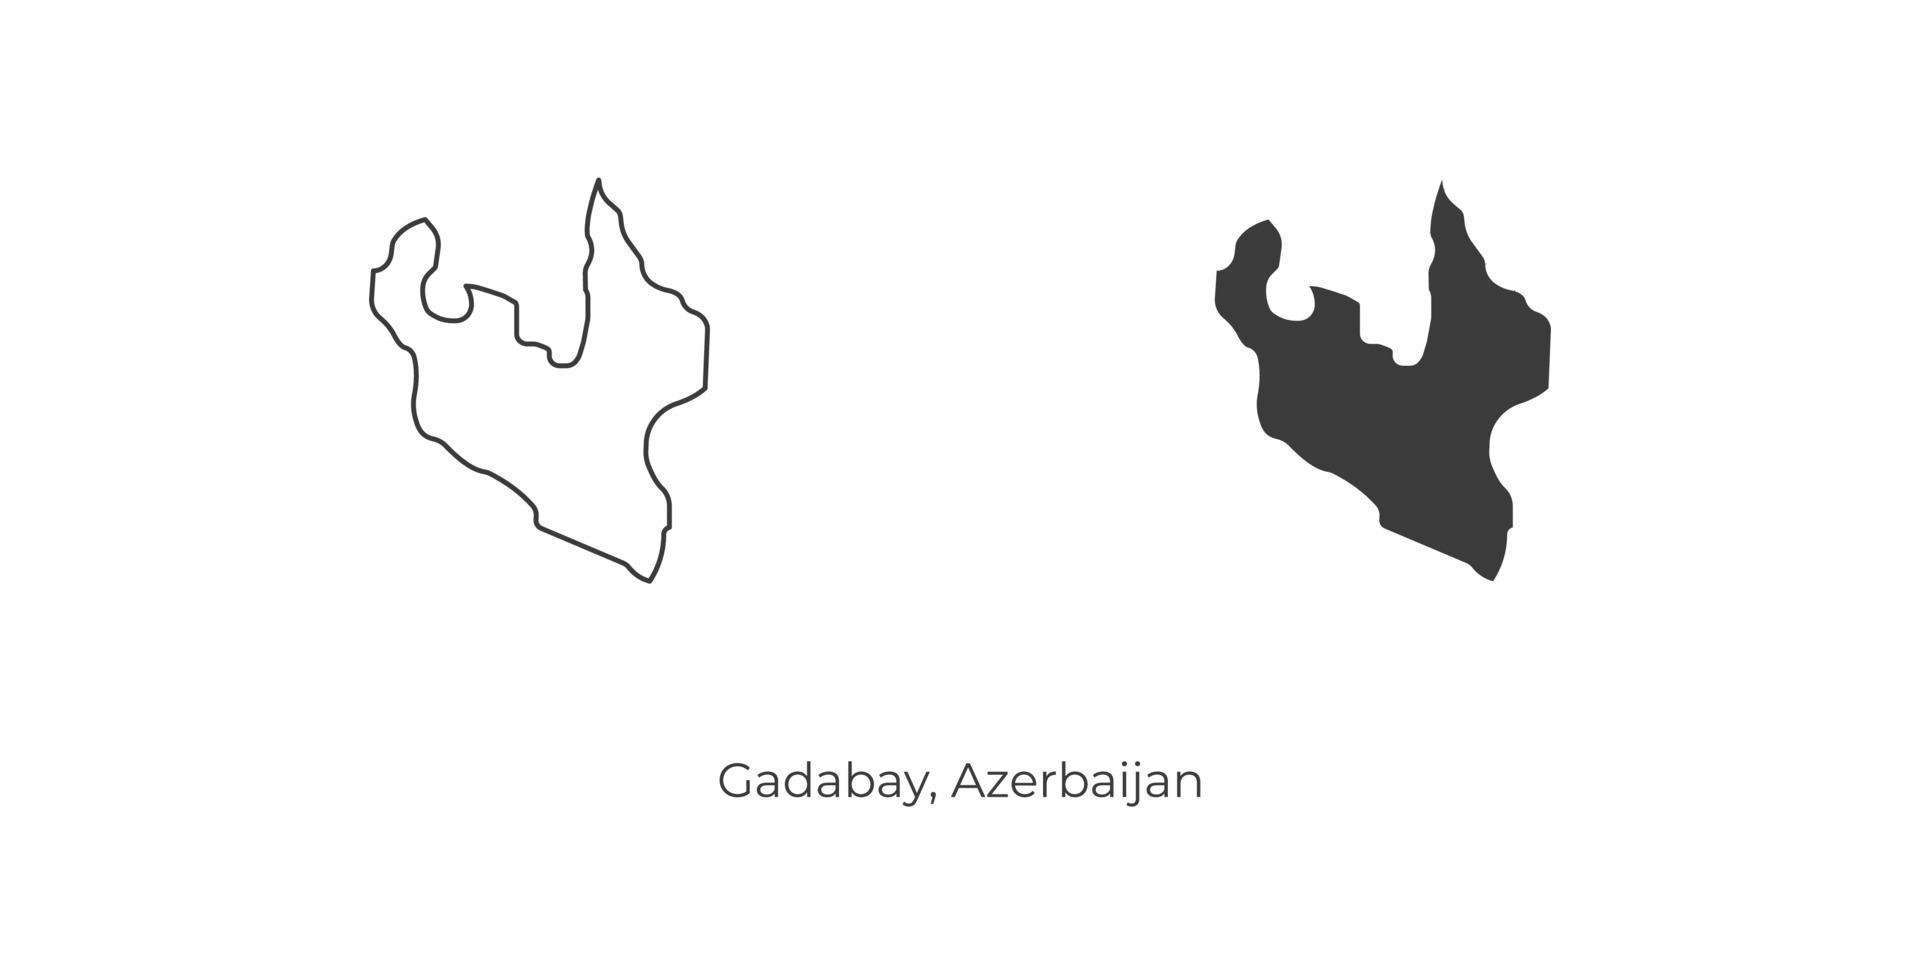 einfache Vektorillustration der Gadabay-Karte, Aserbaidschan. vektor